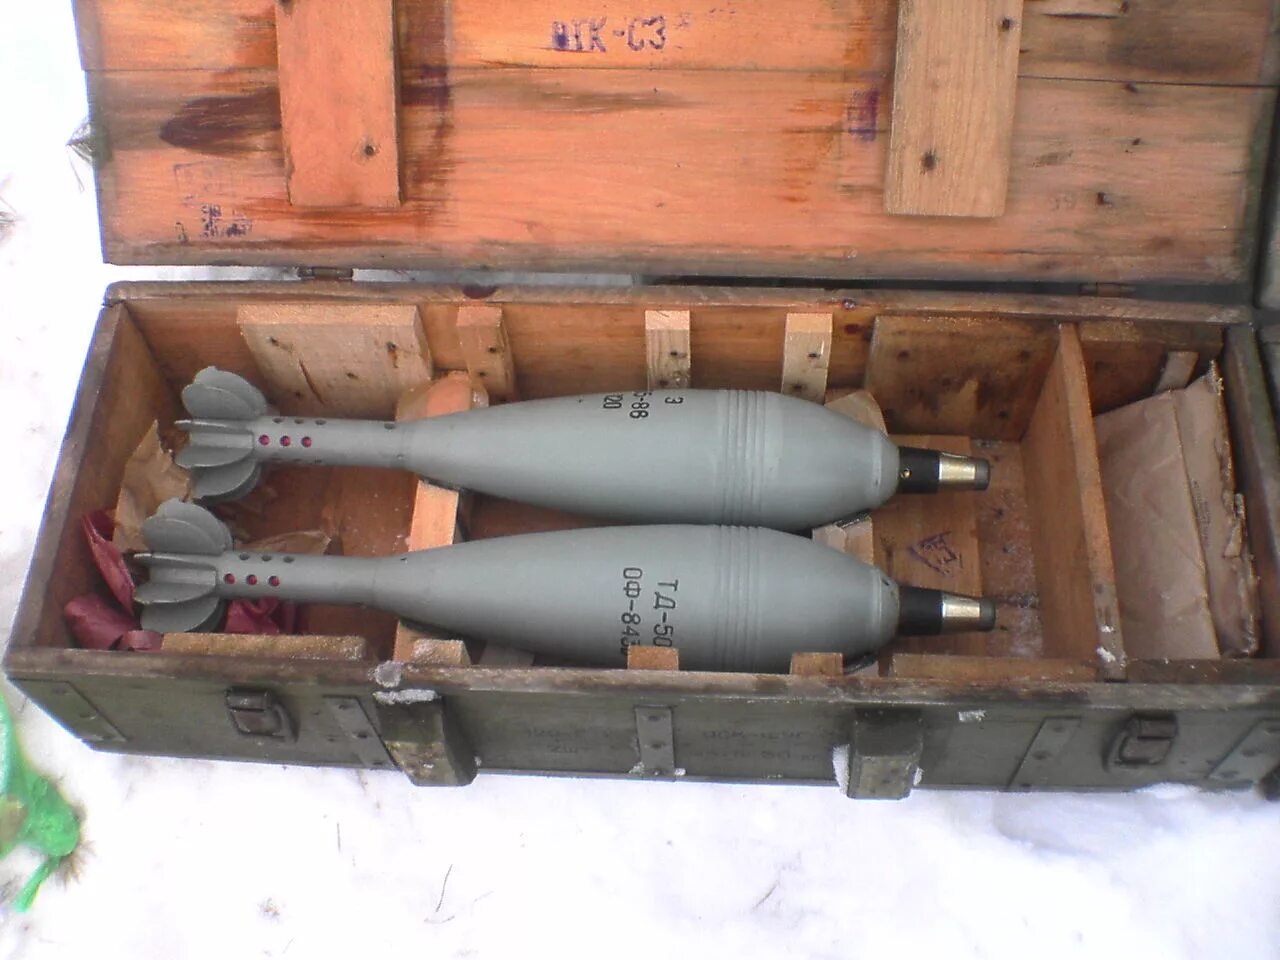 Калибр 122 мм снаряд. Ящик для взрывателей 120 мм миномета. 120 Мм мины в ящике. Укупорка 120 мм мин.